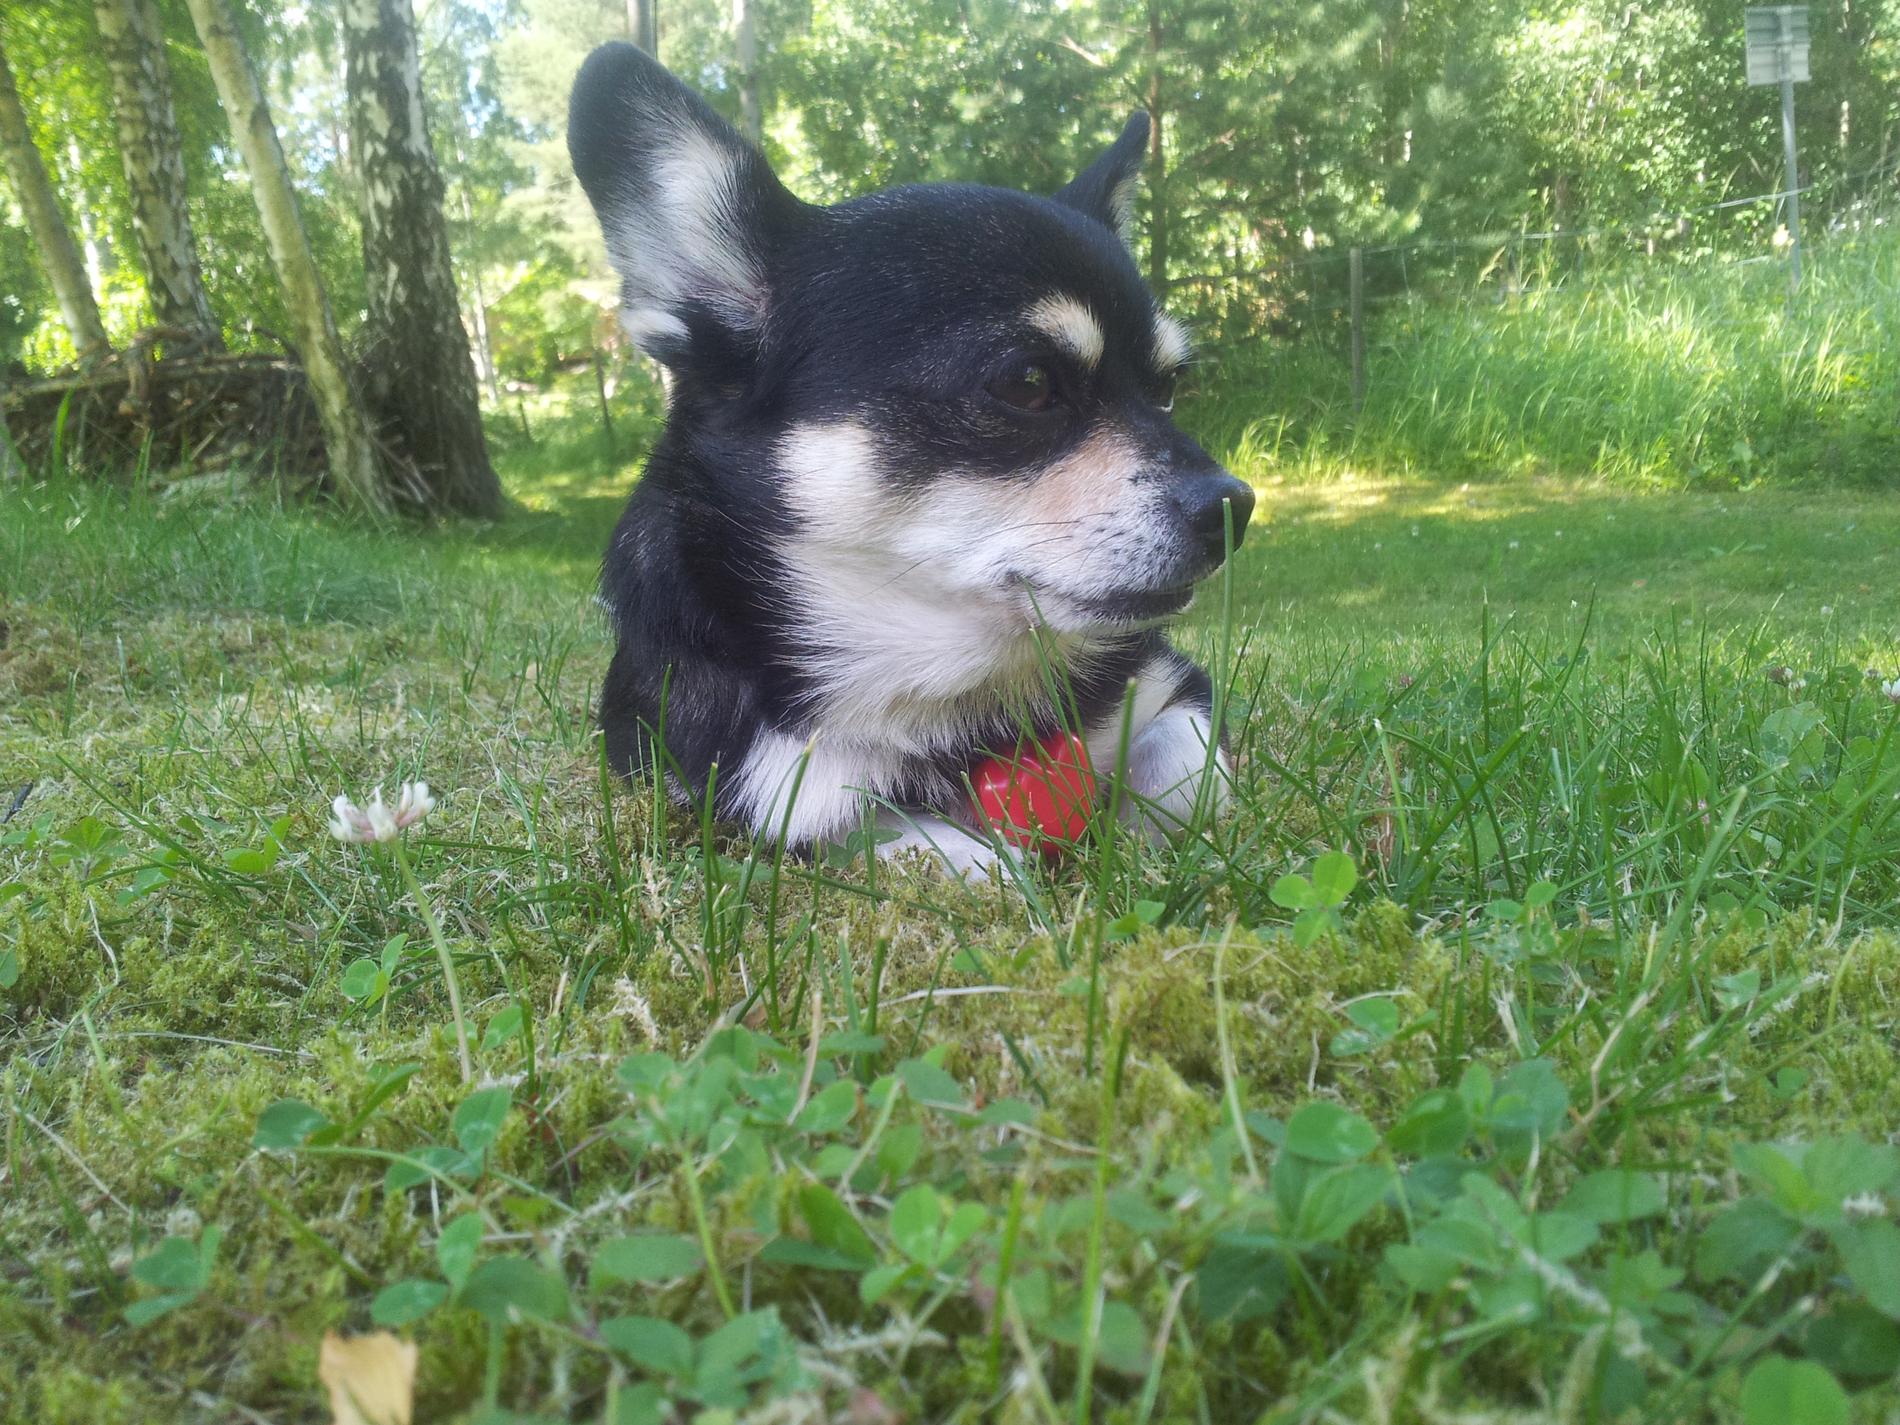 Ligga i gräset och njuta, skönt, hälsar Elvis från Ingarö.